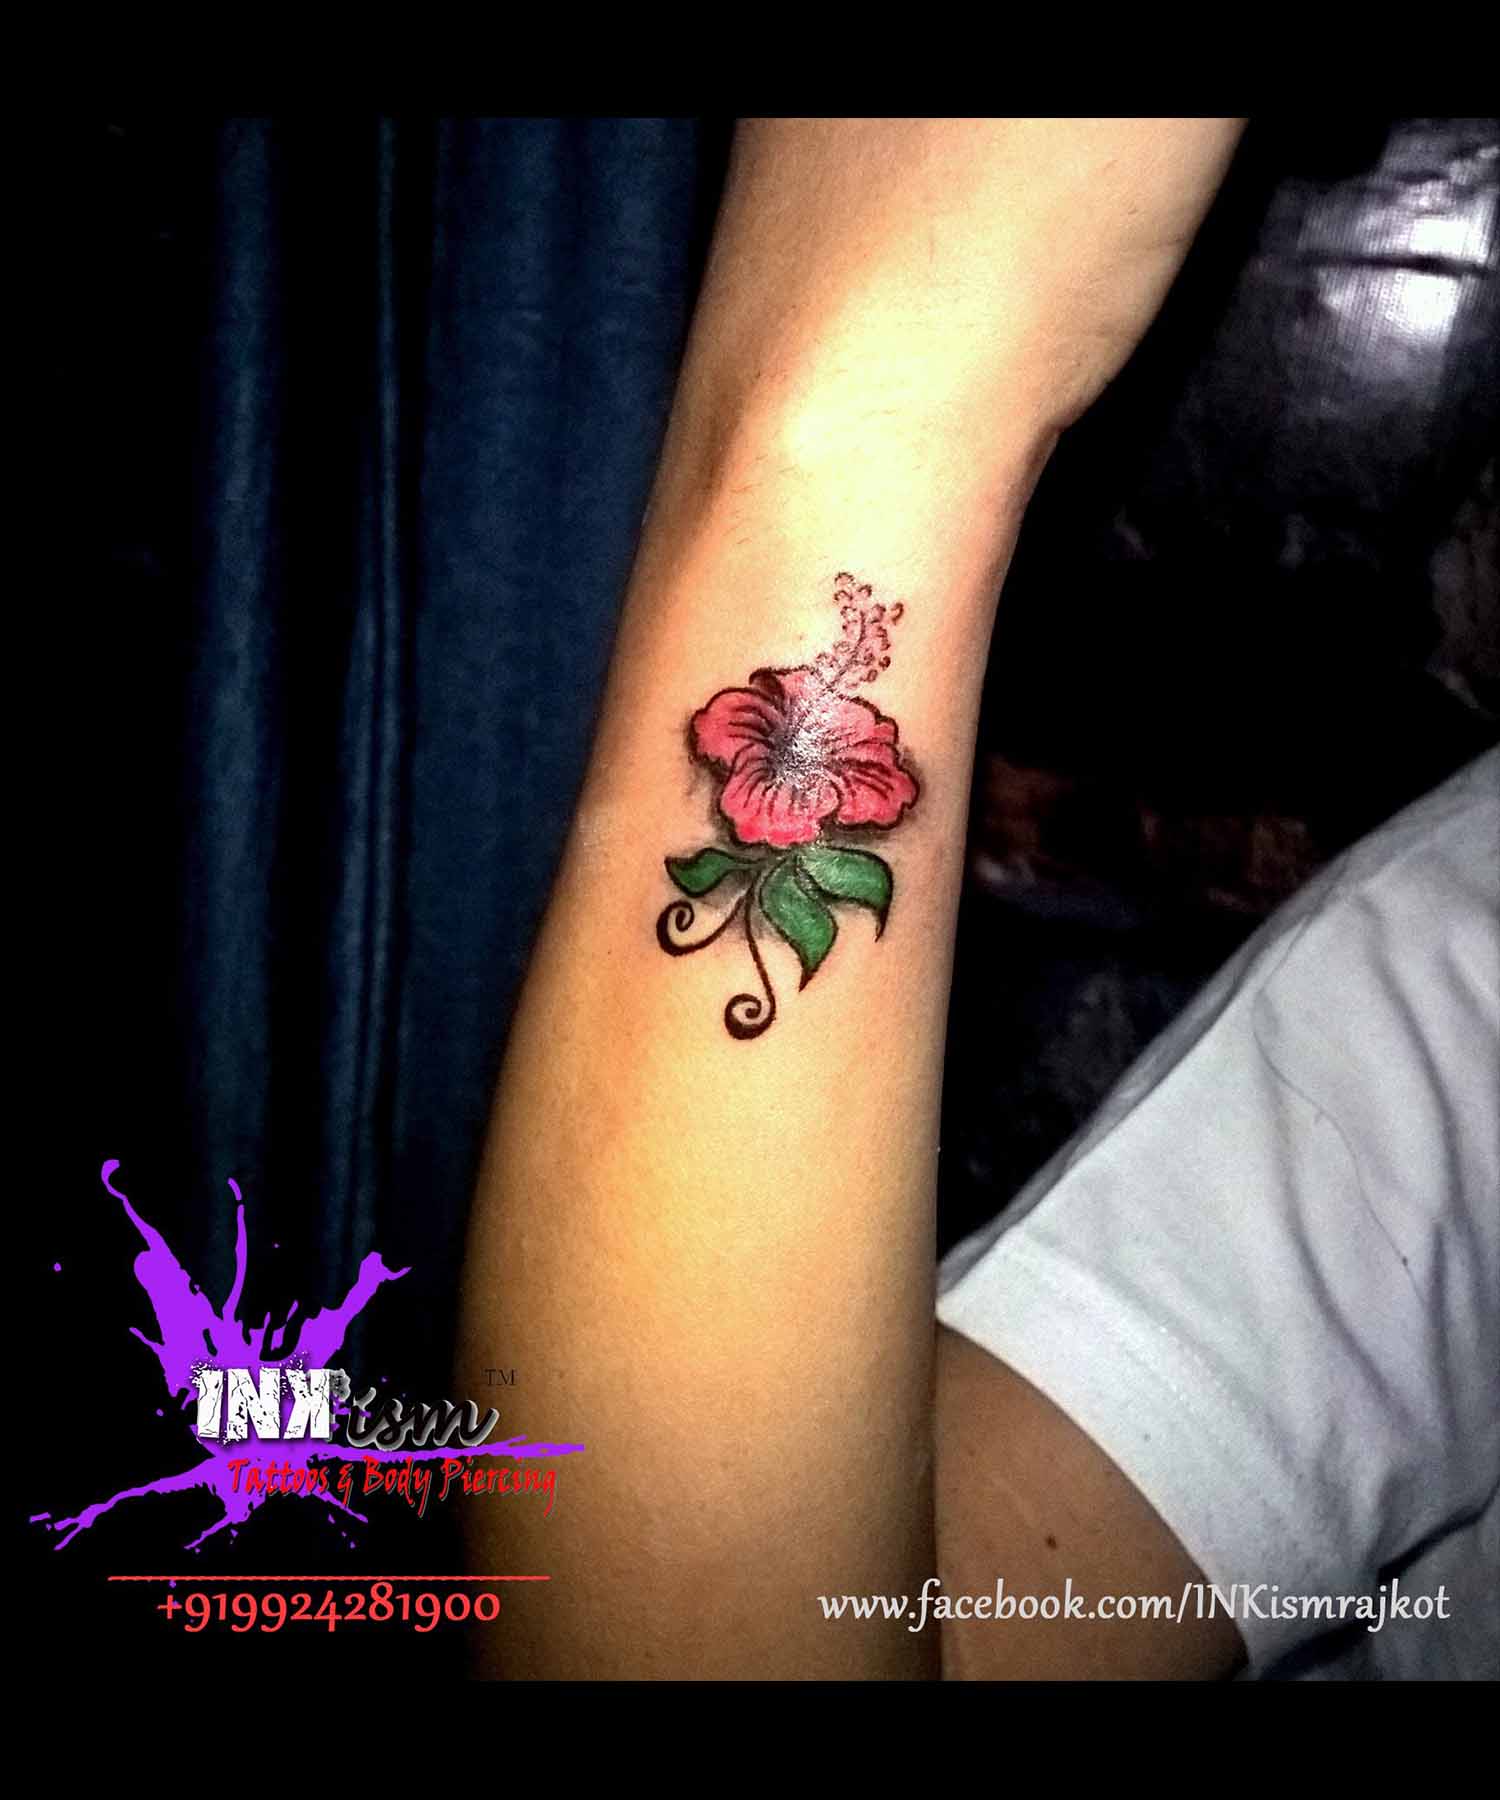 hibiscus flower tattoo, color tattoo, grey wash tattoo, Inkism tattoo and body piercing rajkot gujarat